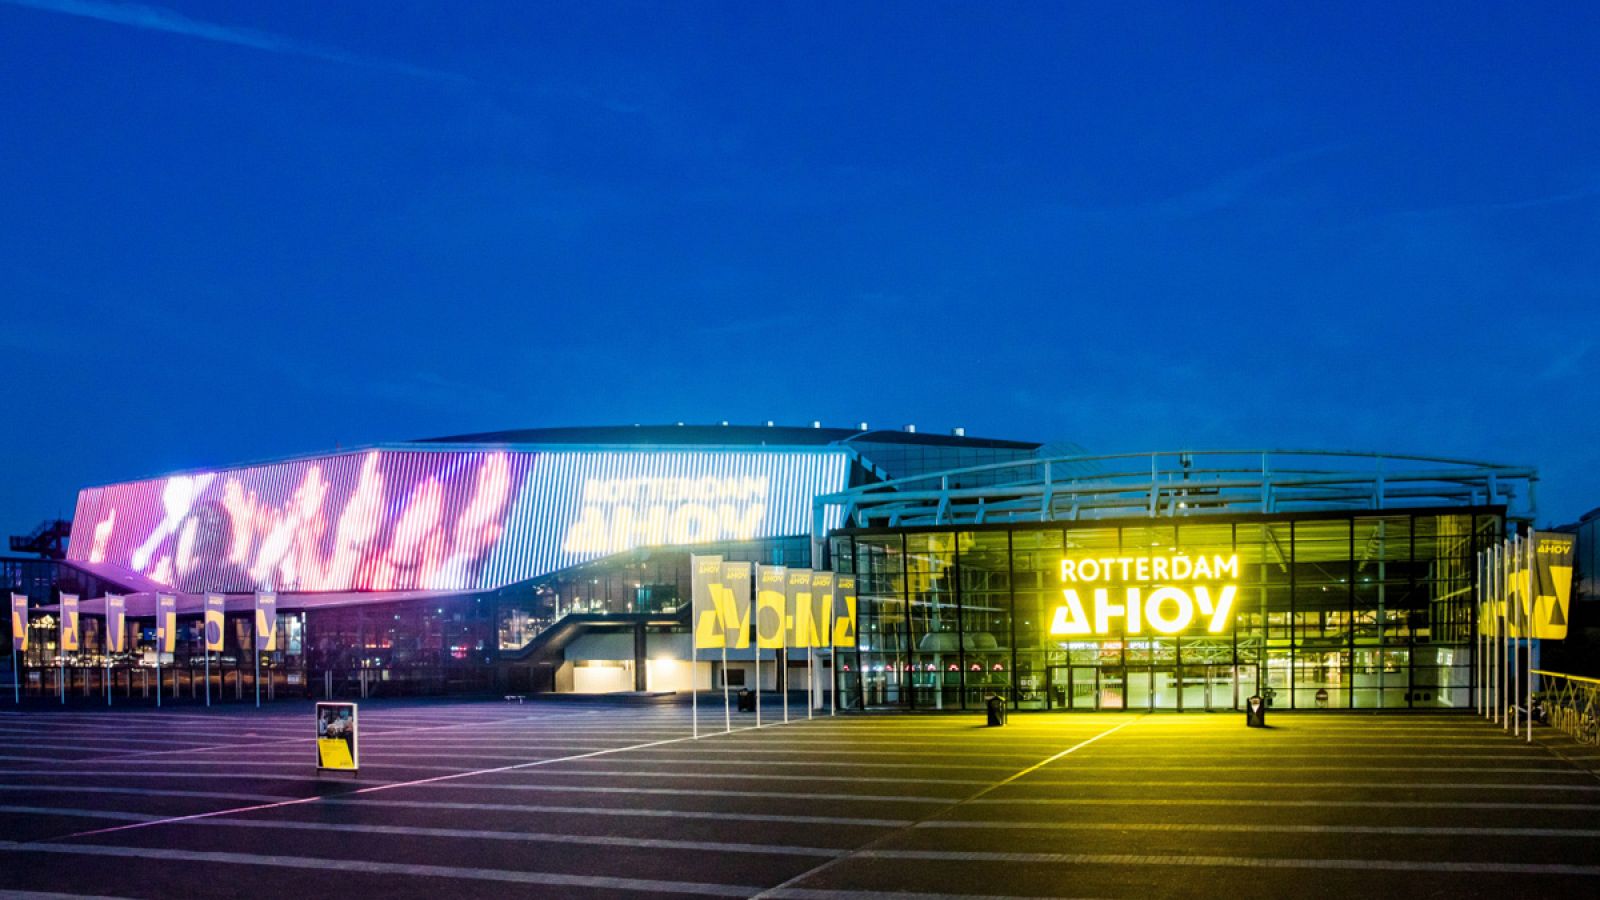 El escenario de Eurovisión 2021 estará ubicado en el Ahoy Arena de Rotterdam.